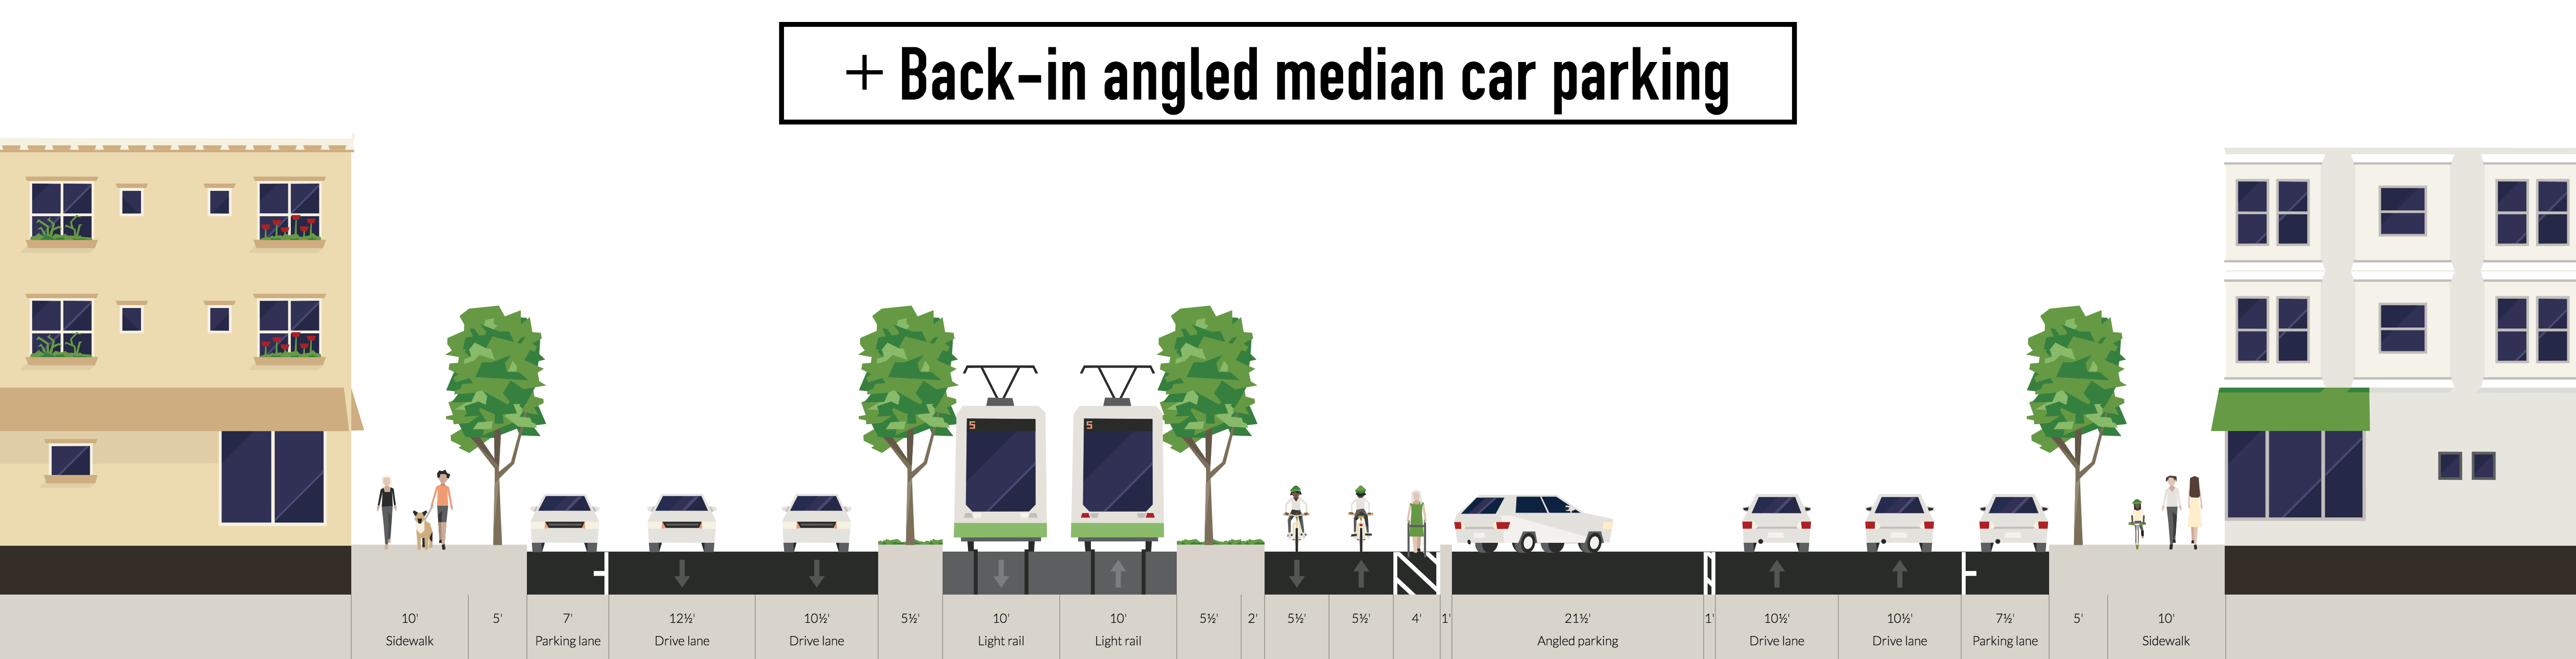 + Back-in angled median car parking